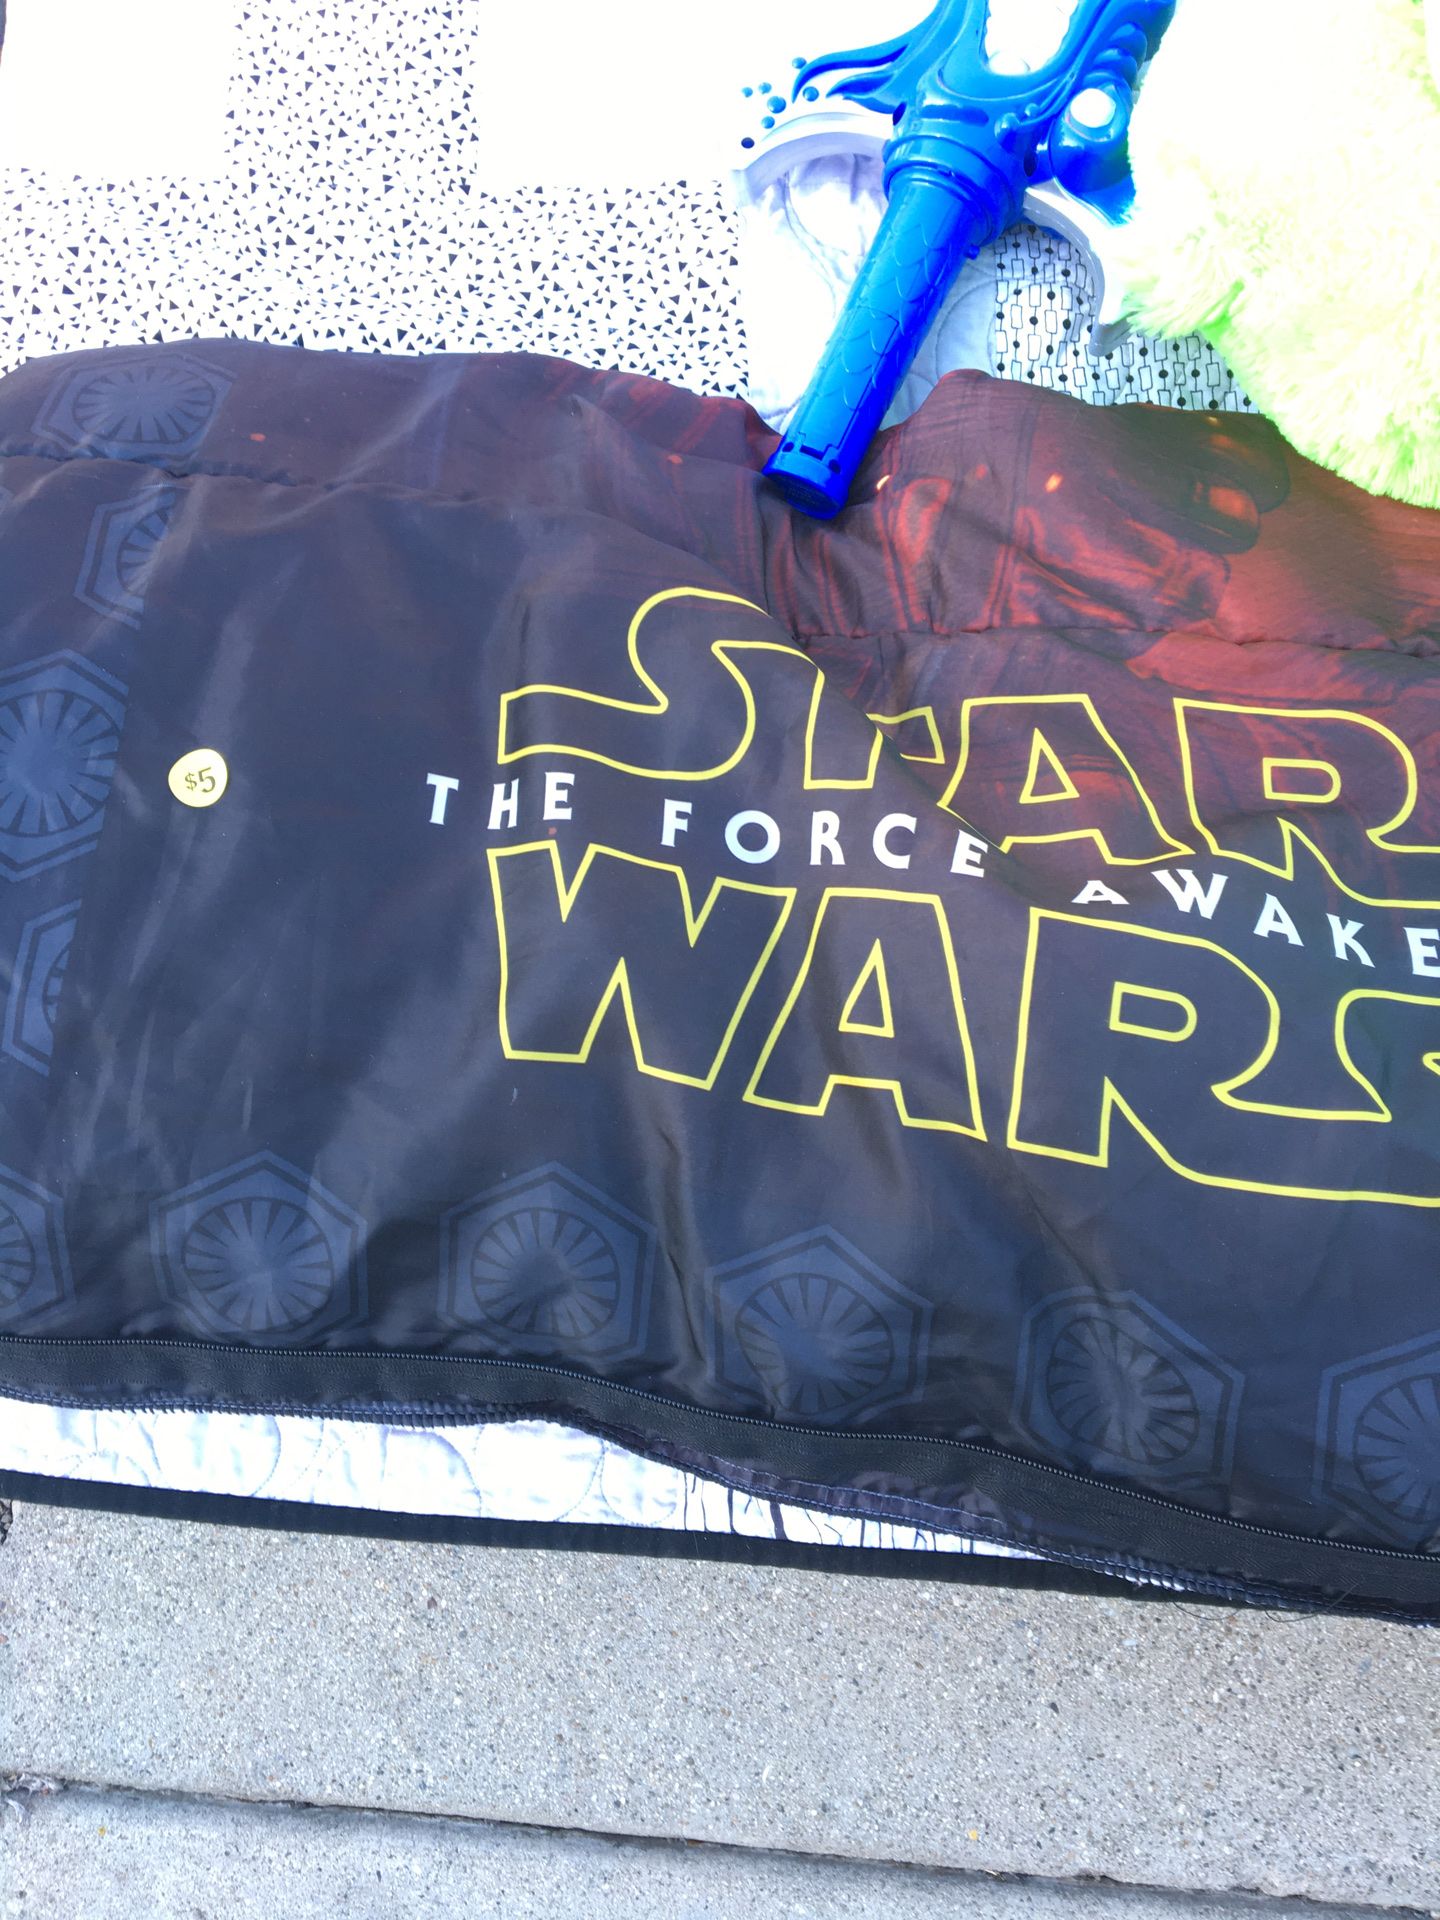 Stars wars sleeping bag